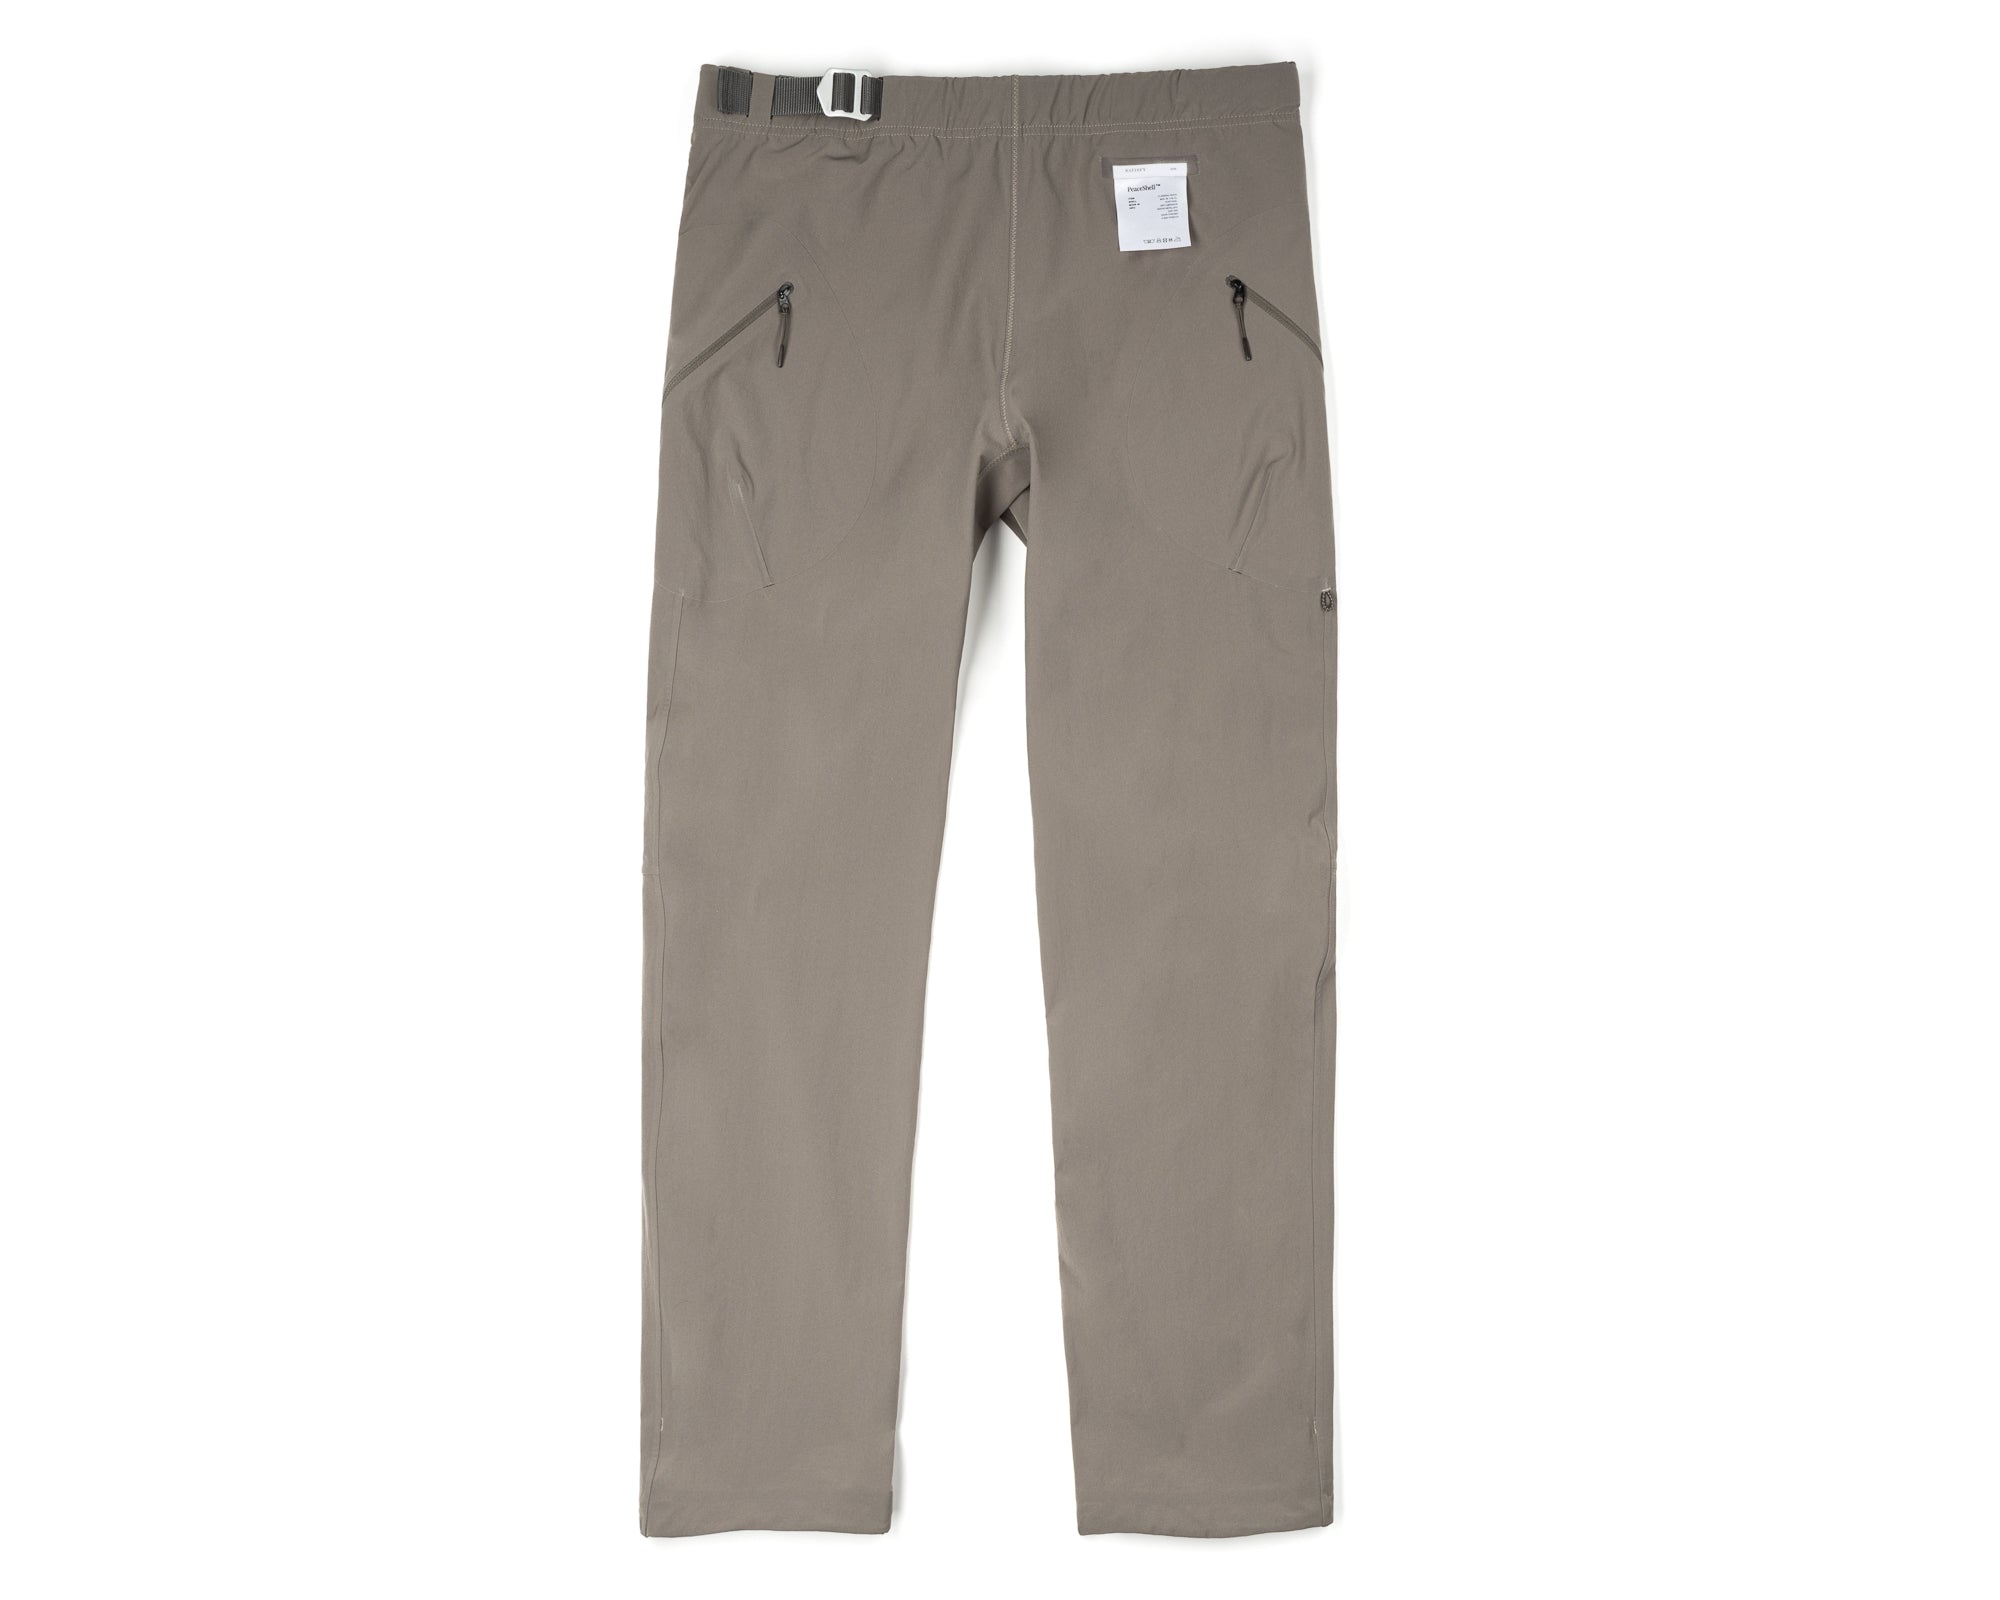 Technical Climber Pant, Men's Grey Hiking Pants